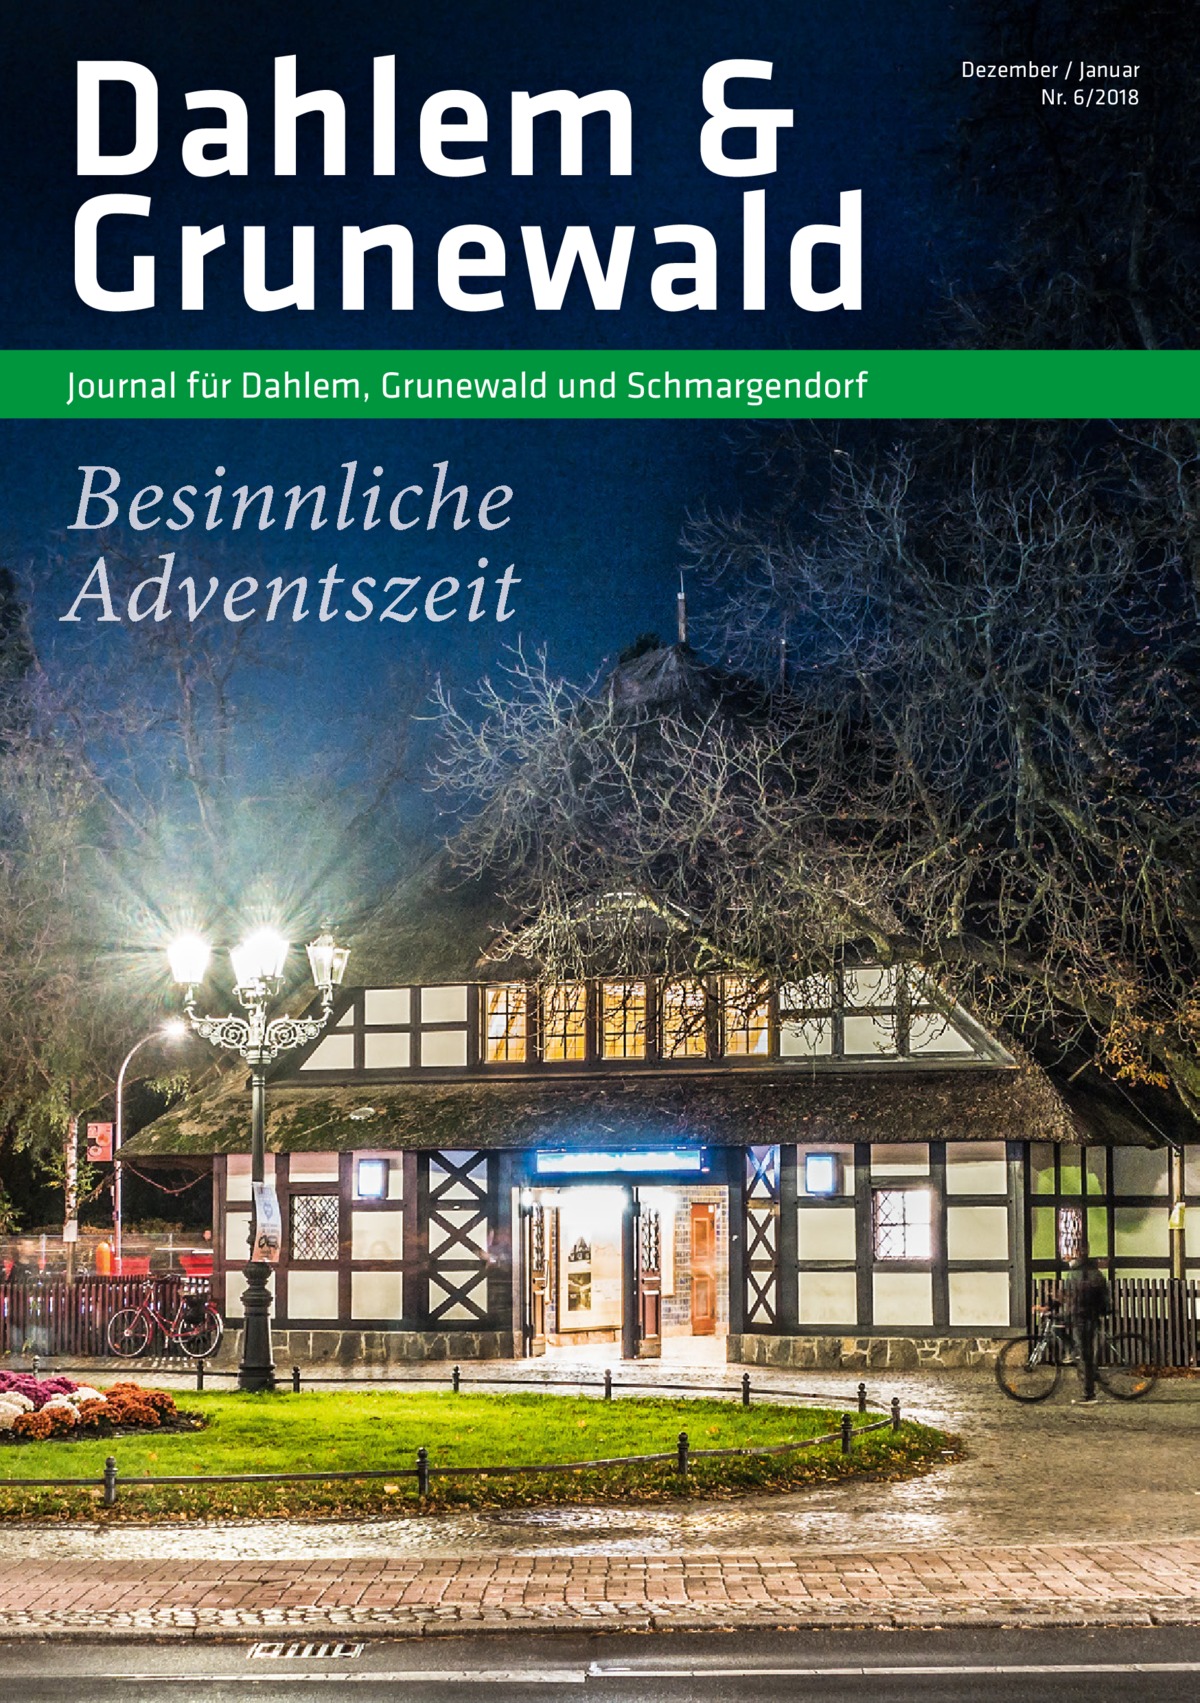 Dahlem & Grunewald Journal für Dahlem, Grunewald und Schmargendorf  Besinnliche Adventszeit  Dezember / Januar Nr. 6/2018